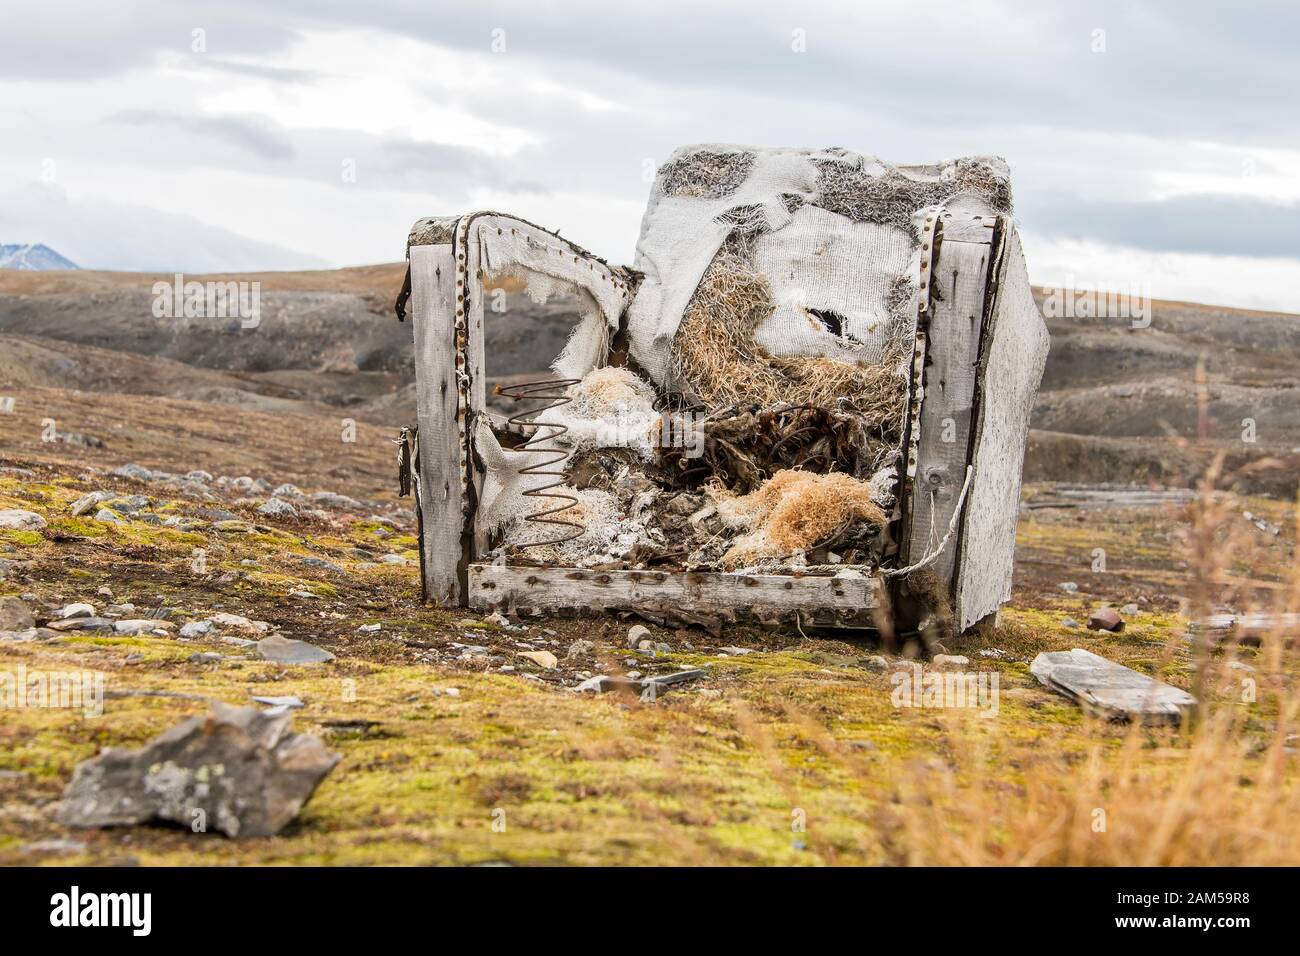 Sehr unbequemer gebrochener Sessel auf der Wiese - Müll in der Umgebung Stockfoto